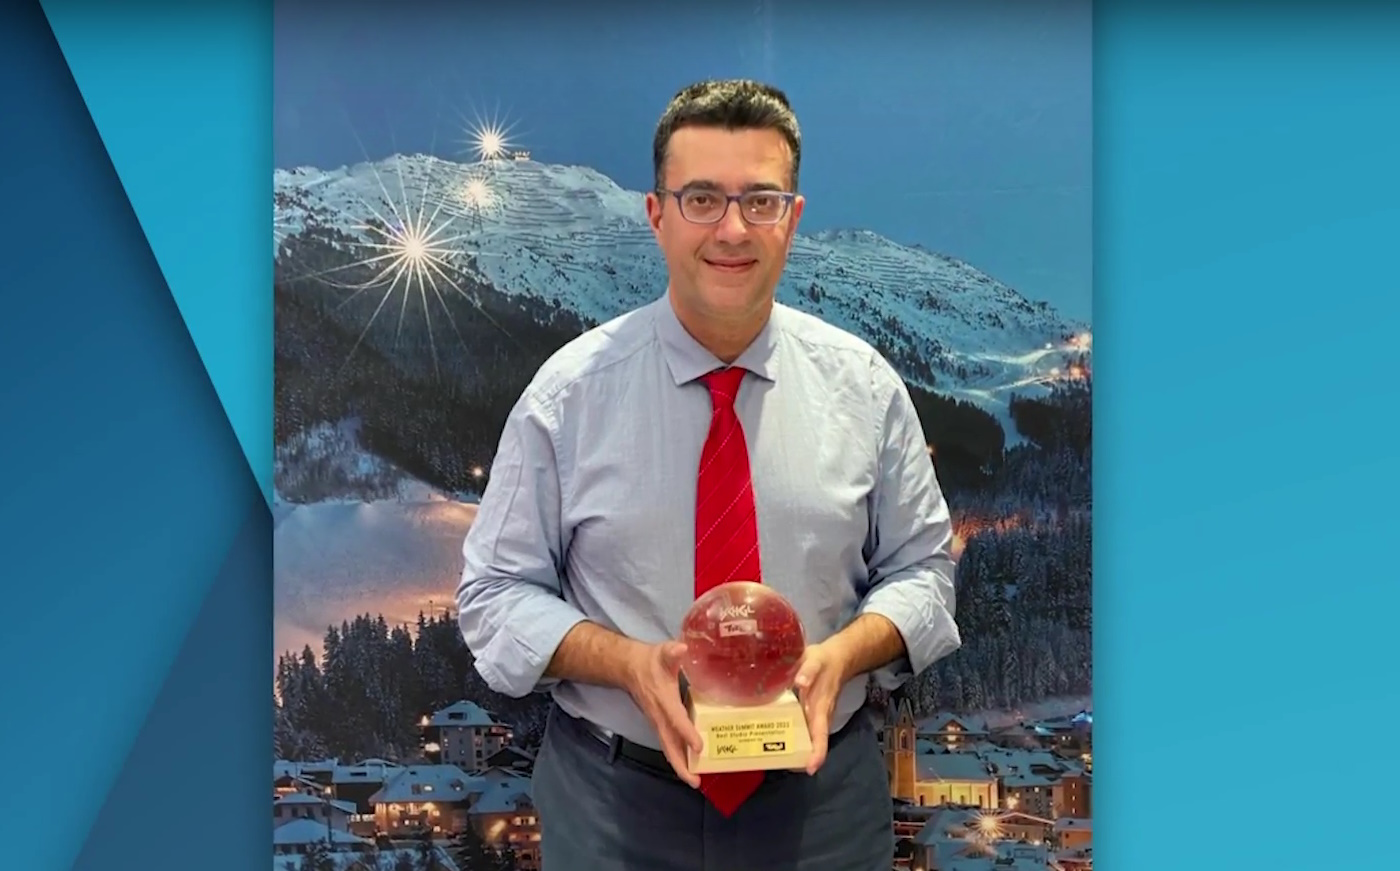 Ο μετεωρολόγος Παναγιώτης Γιαννόπουλος κέρδισε το ευρωπαϊκό βραβείο καλύτερης παρουσίασης καιρού